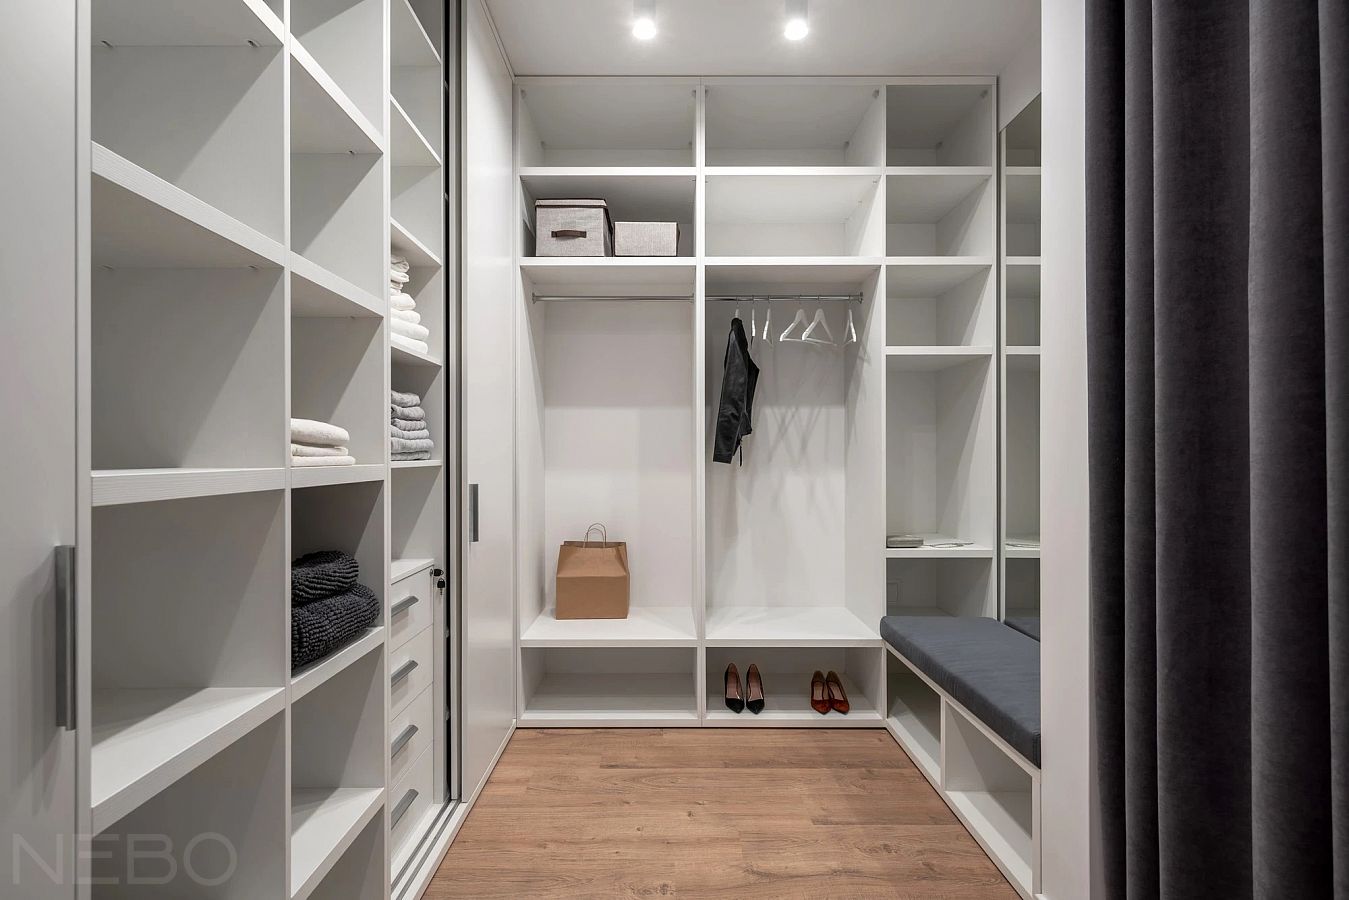 Дизайн маленькой гардеробной комнаты - идеи и советы